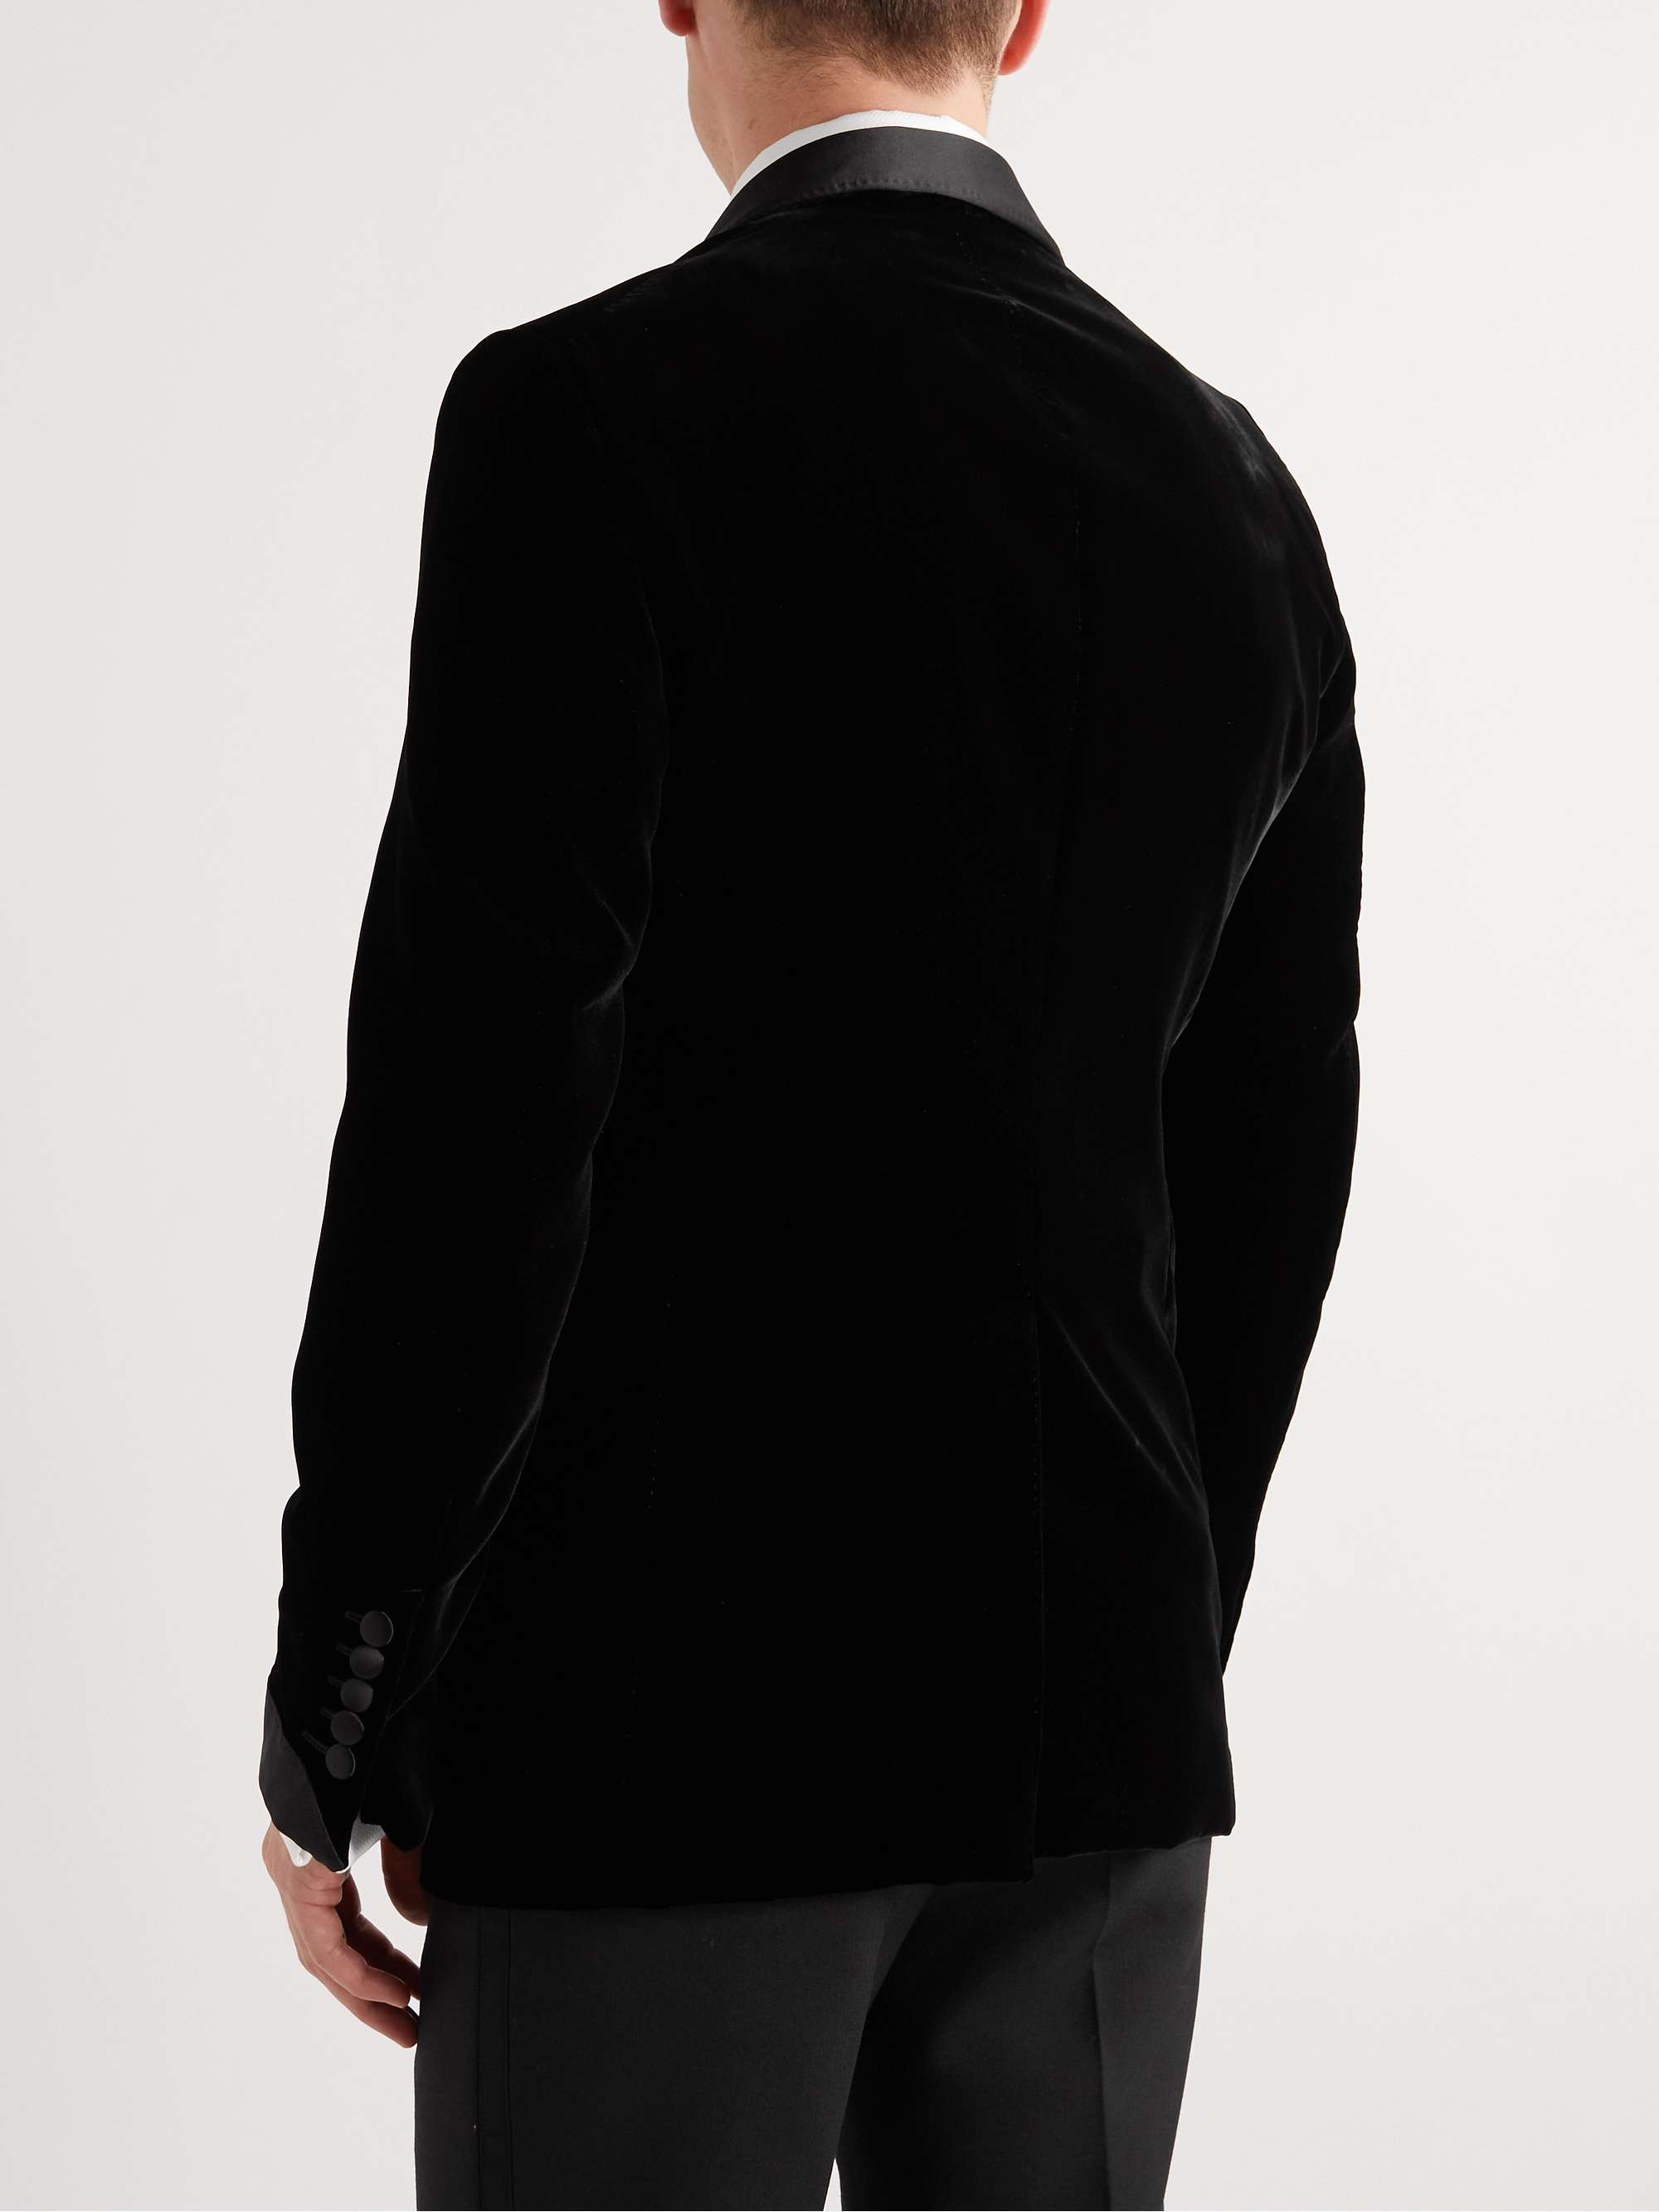 TOM FORD Shelton Slim-Fit Silk Satin-Trimmed Velvet Tuxedo Jacket